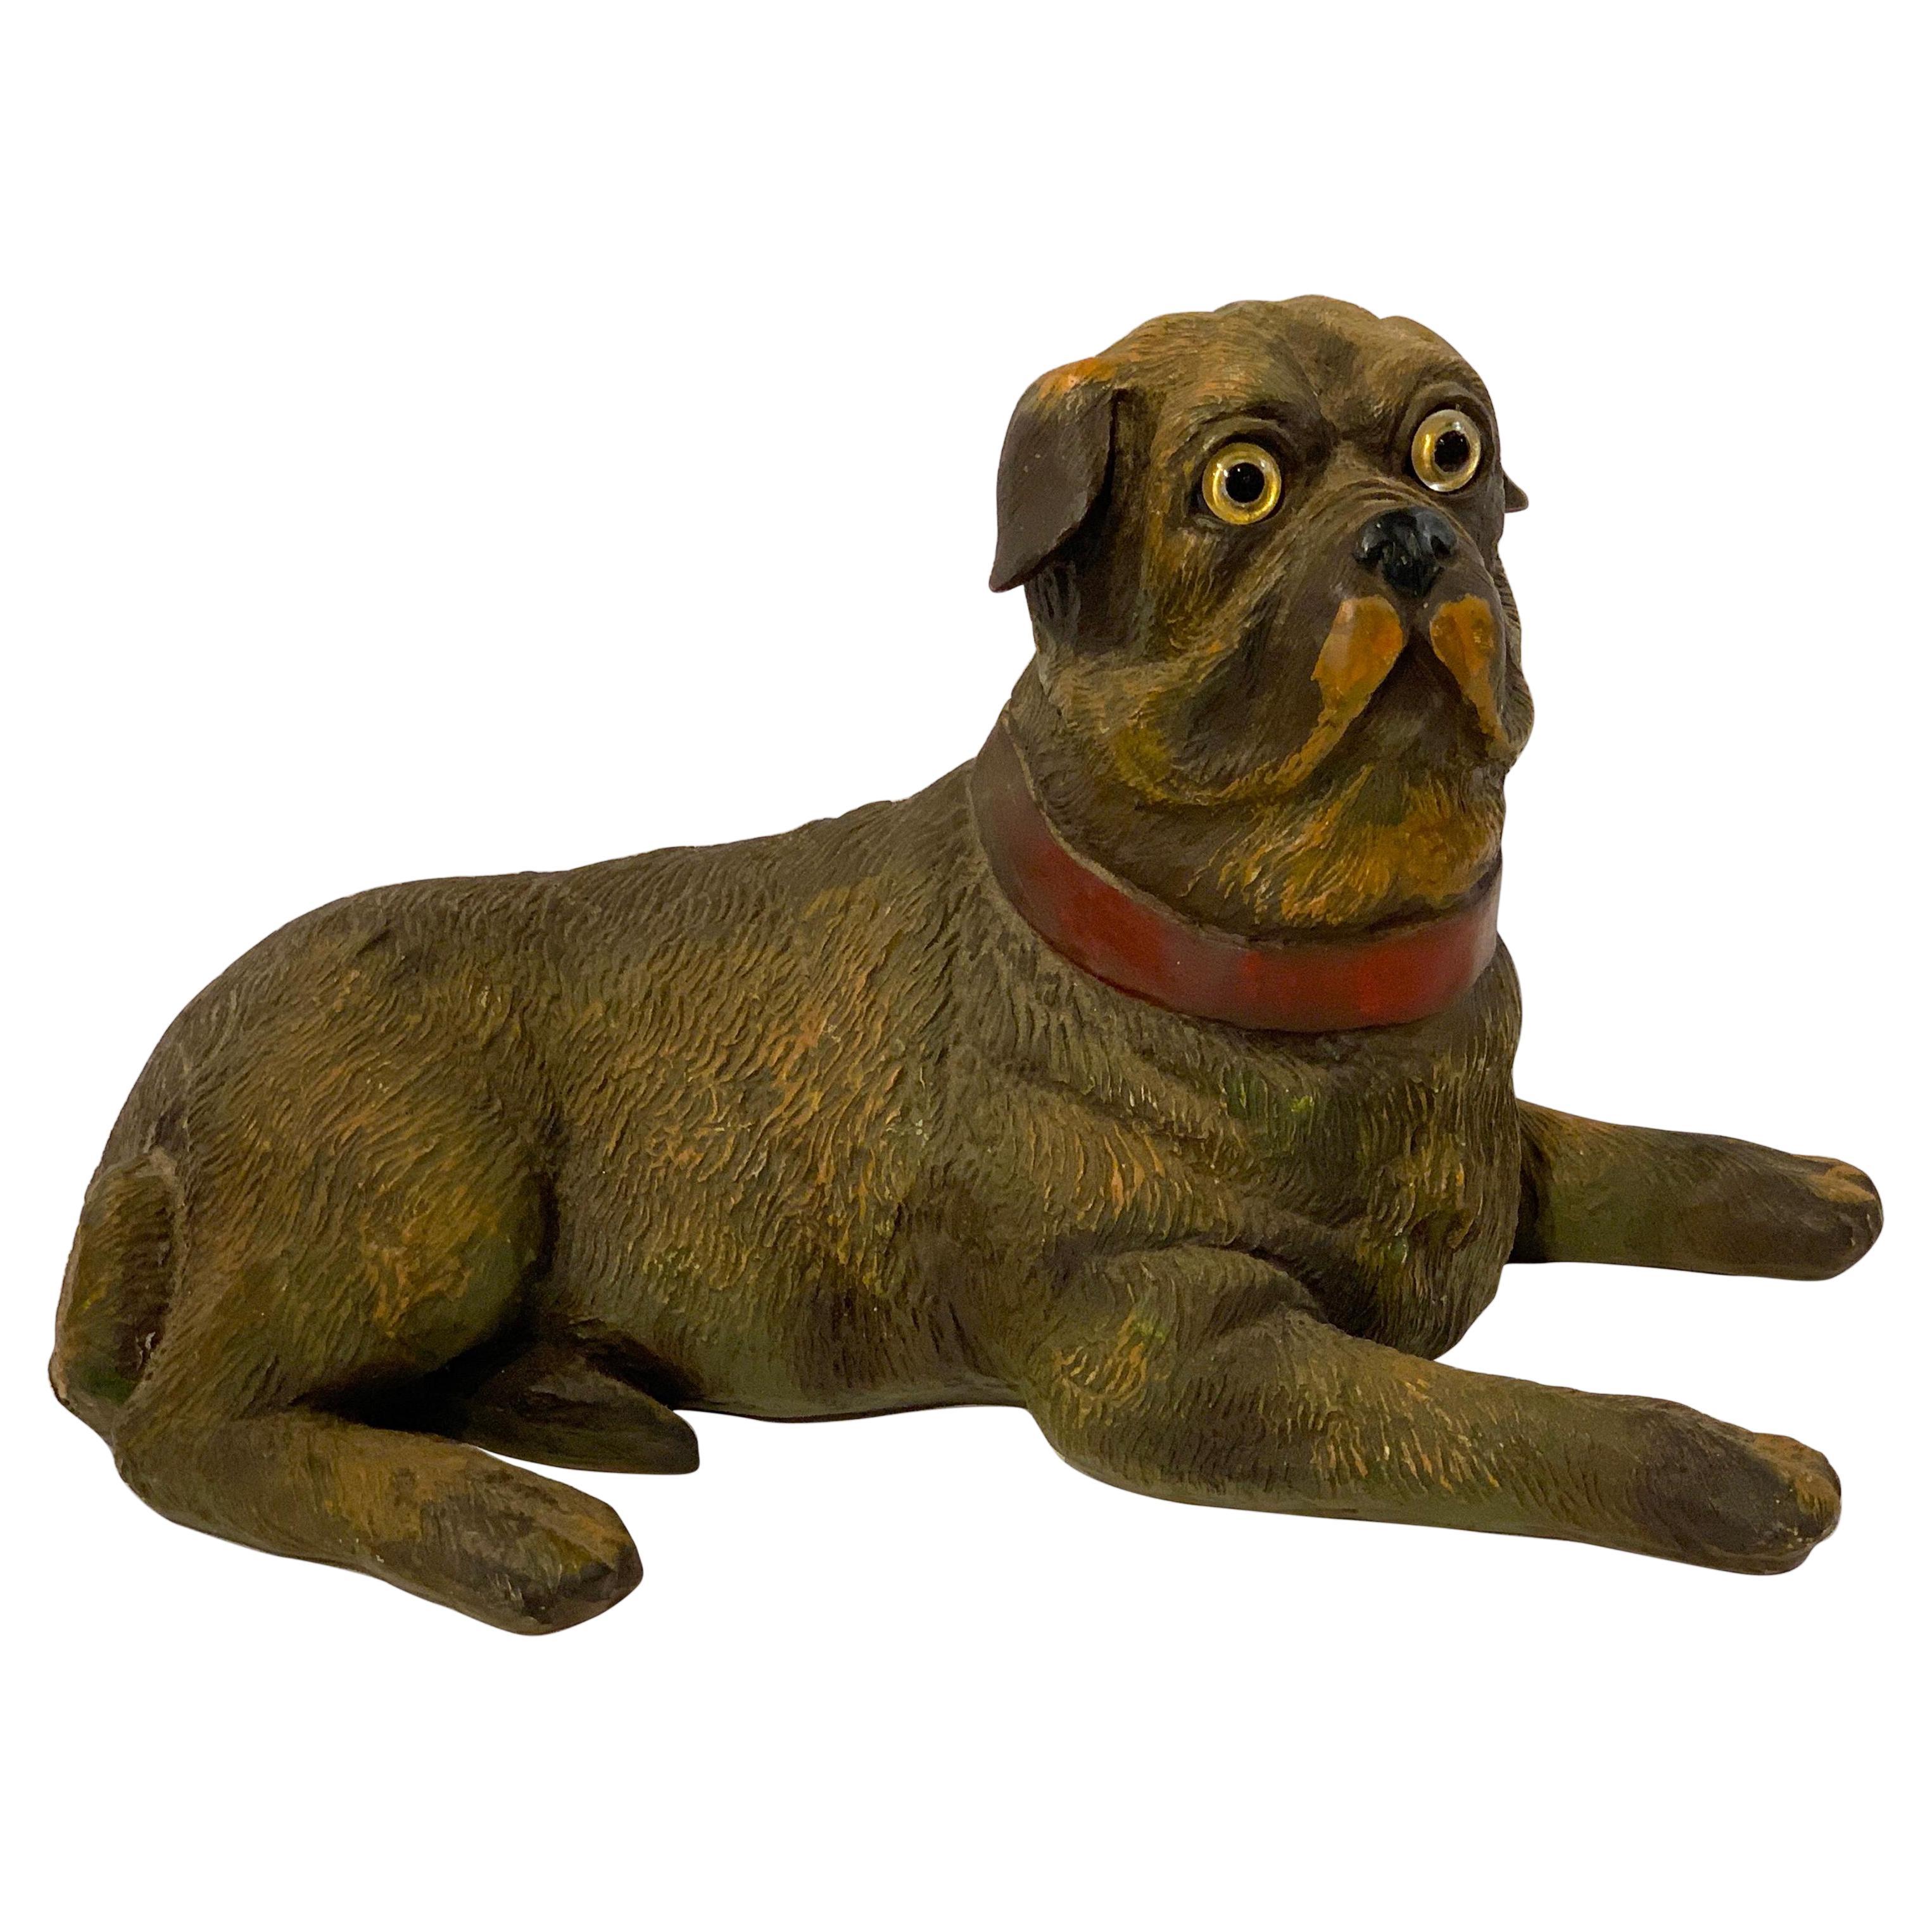 English Style Recumbent Pug Dog with Glass Eyes